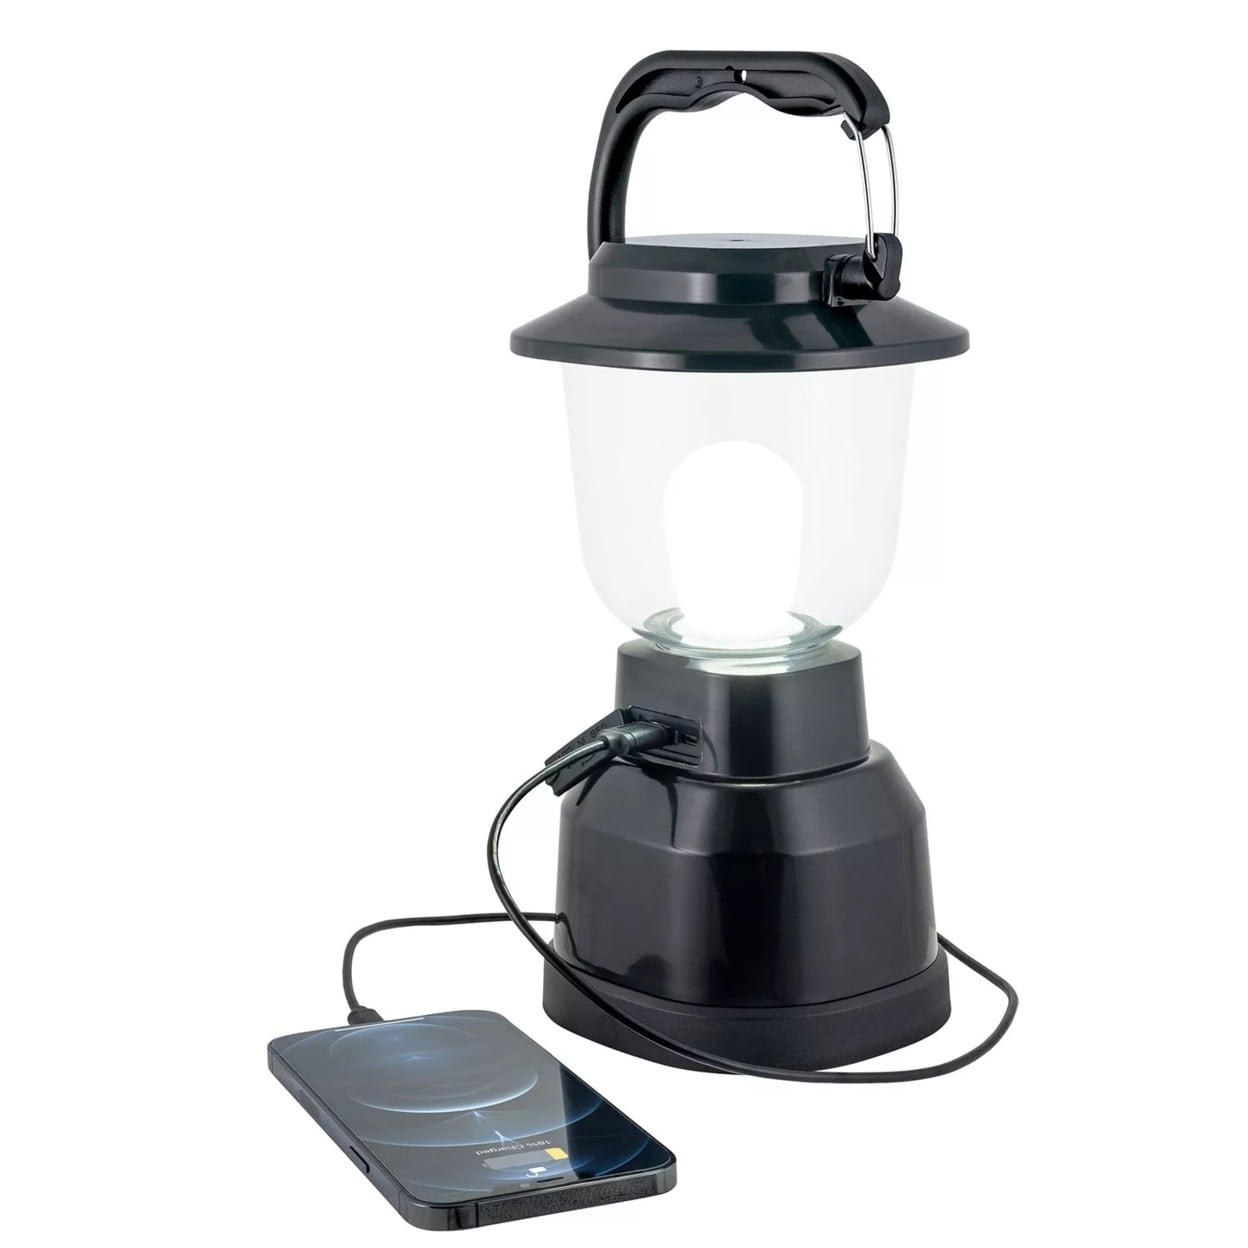 Lanterne LED rechargeable EXPERT 3810 Puissante 10W Lampe de poche, Emos